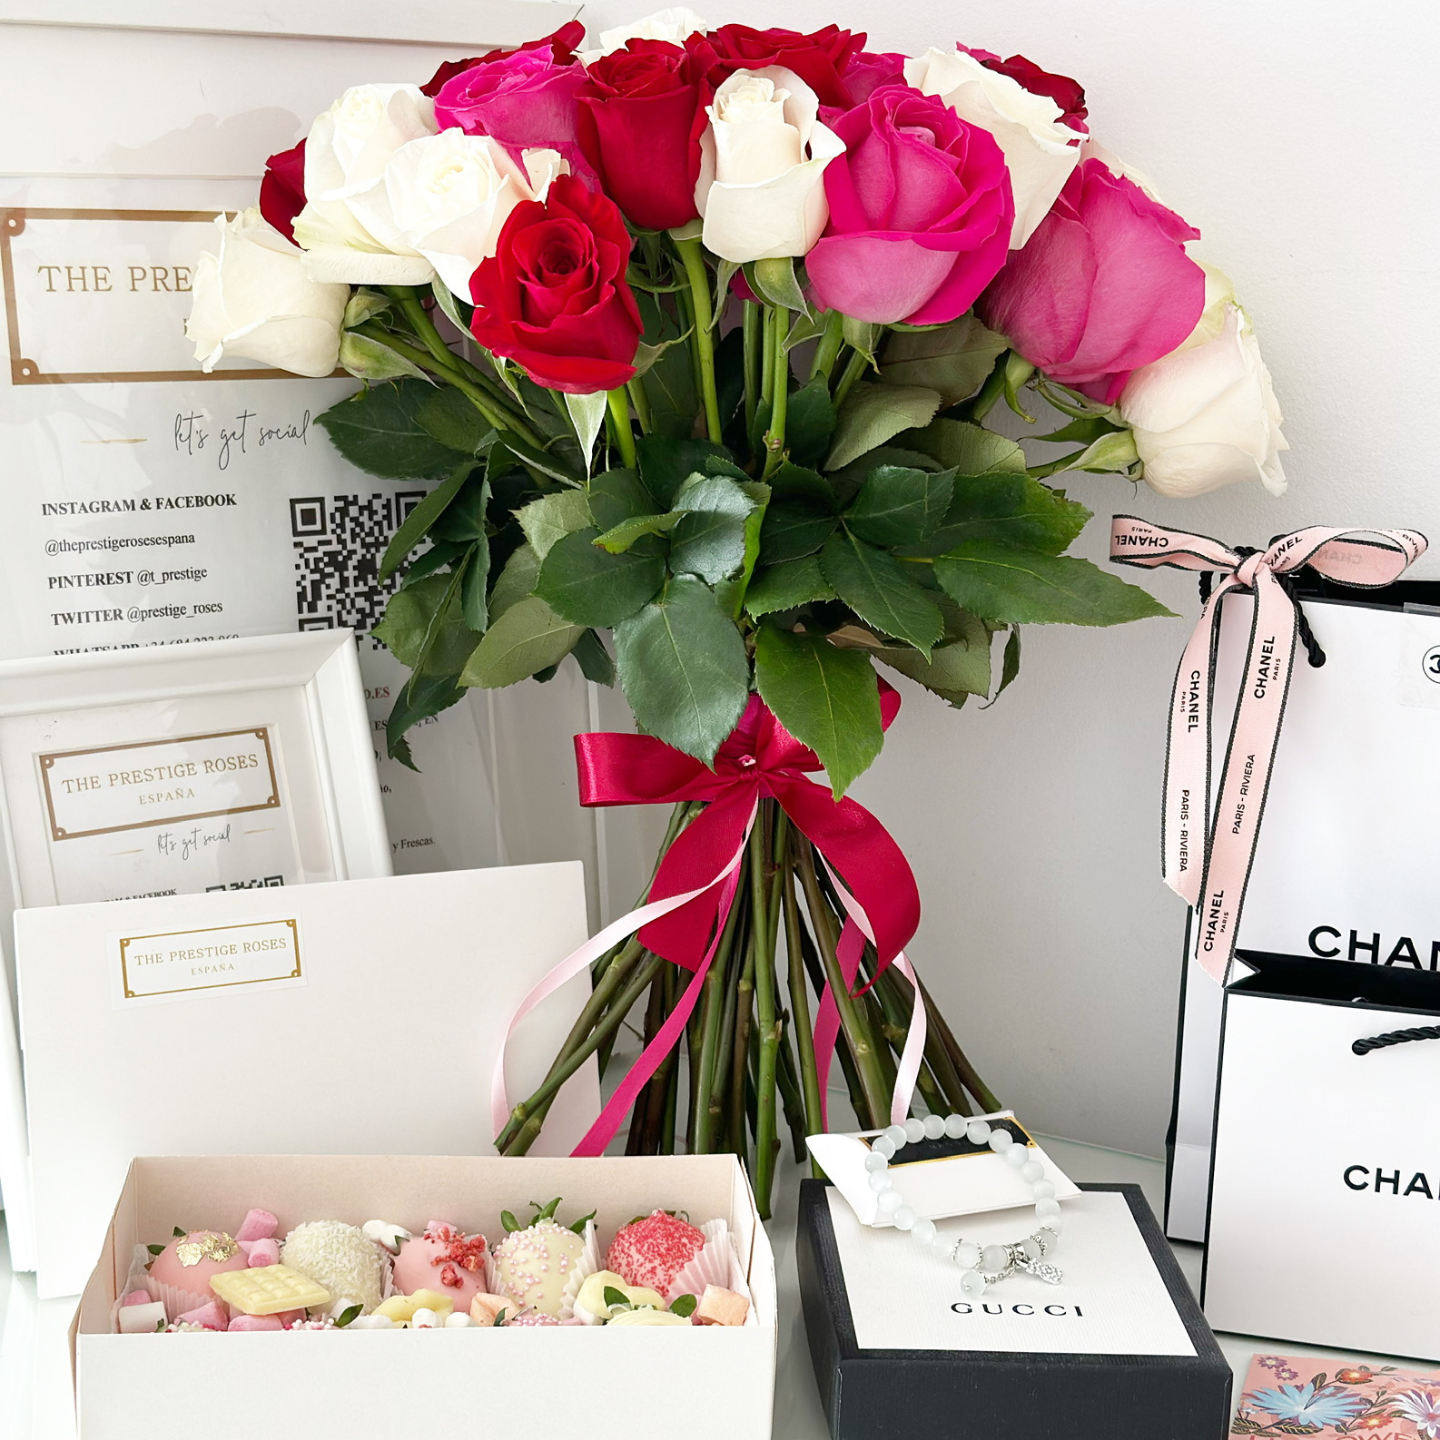 Como cuidar tus bolsos de lujo: Louis Vuitton, Chanel, Gucci 